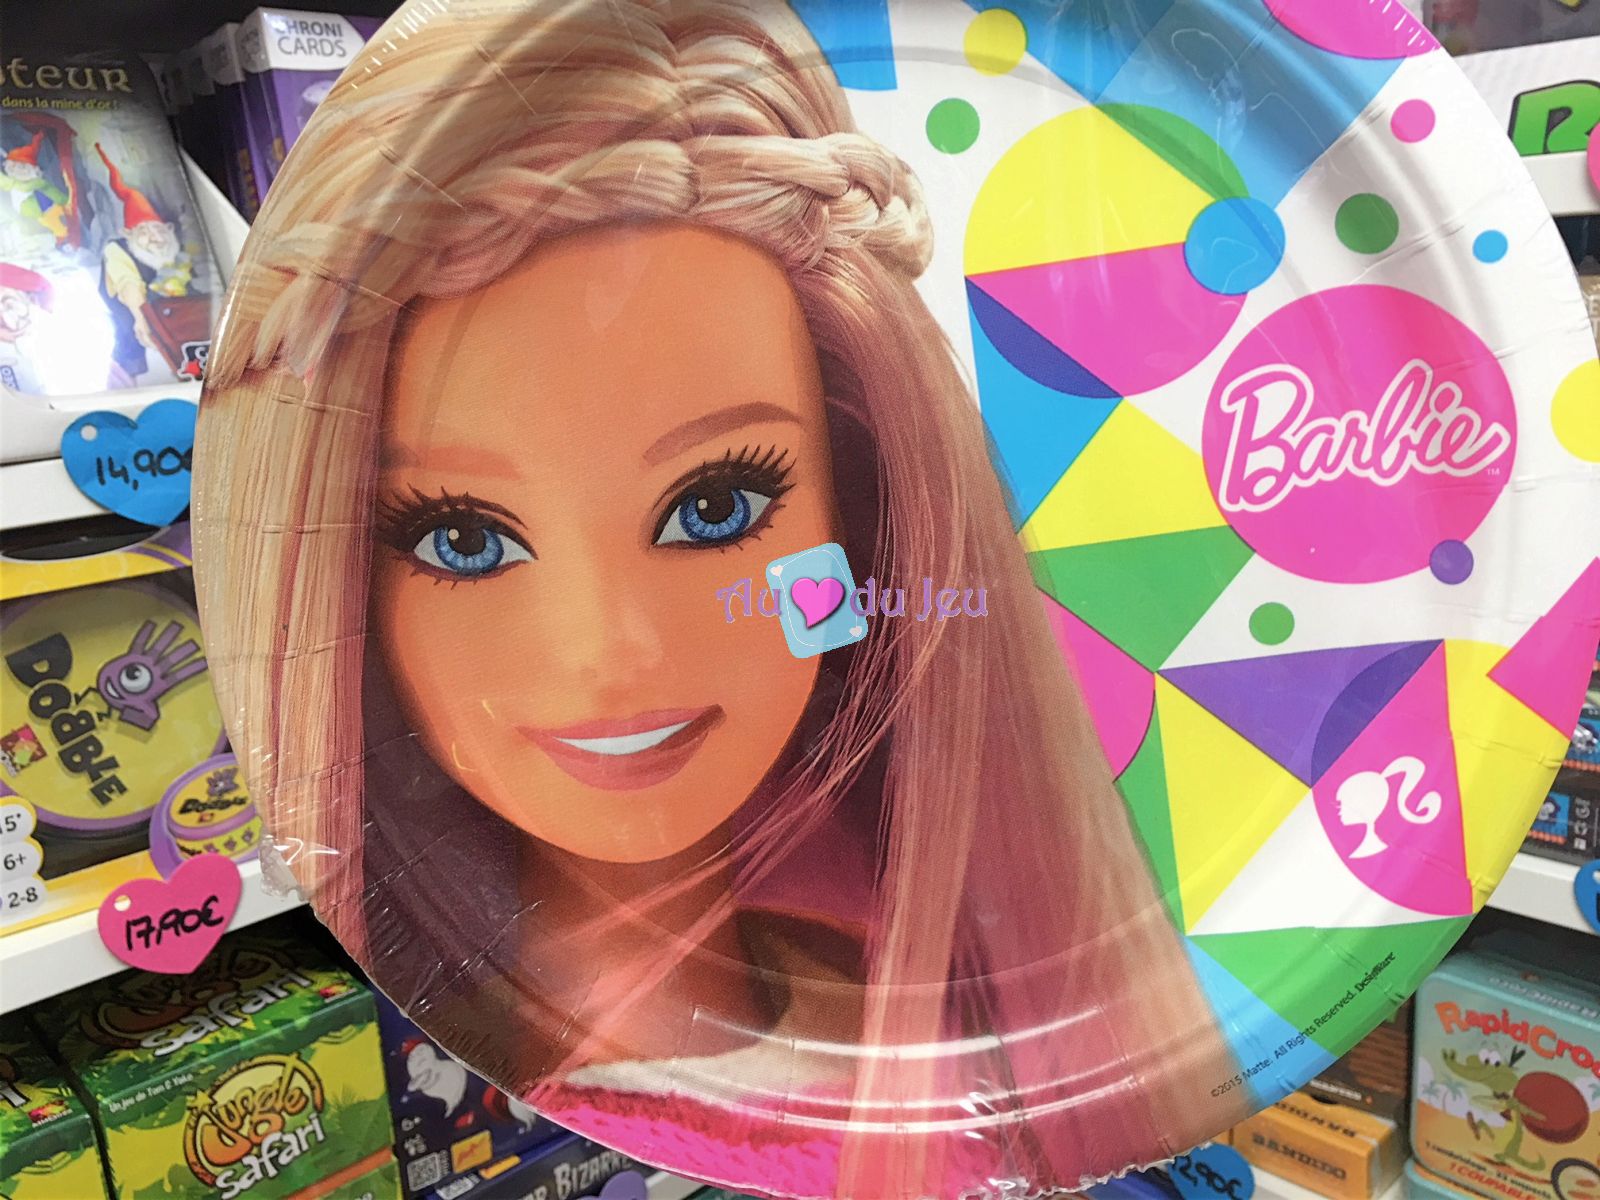 8 Assiettes Barbie - Au Coeur du Jeu